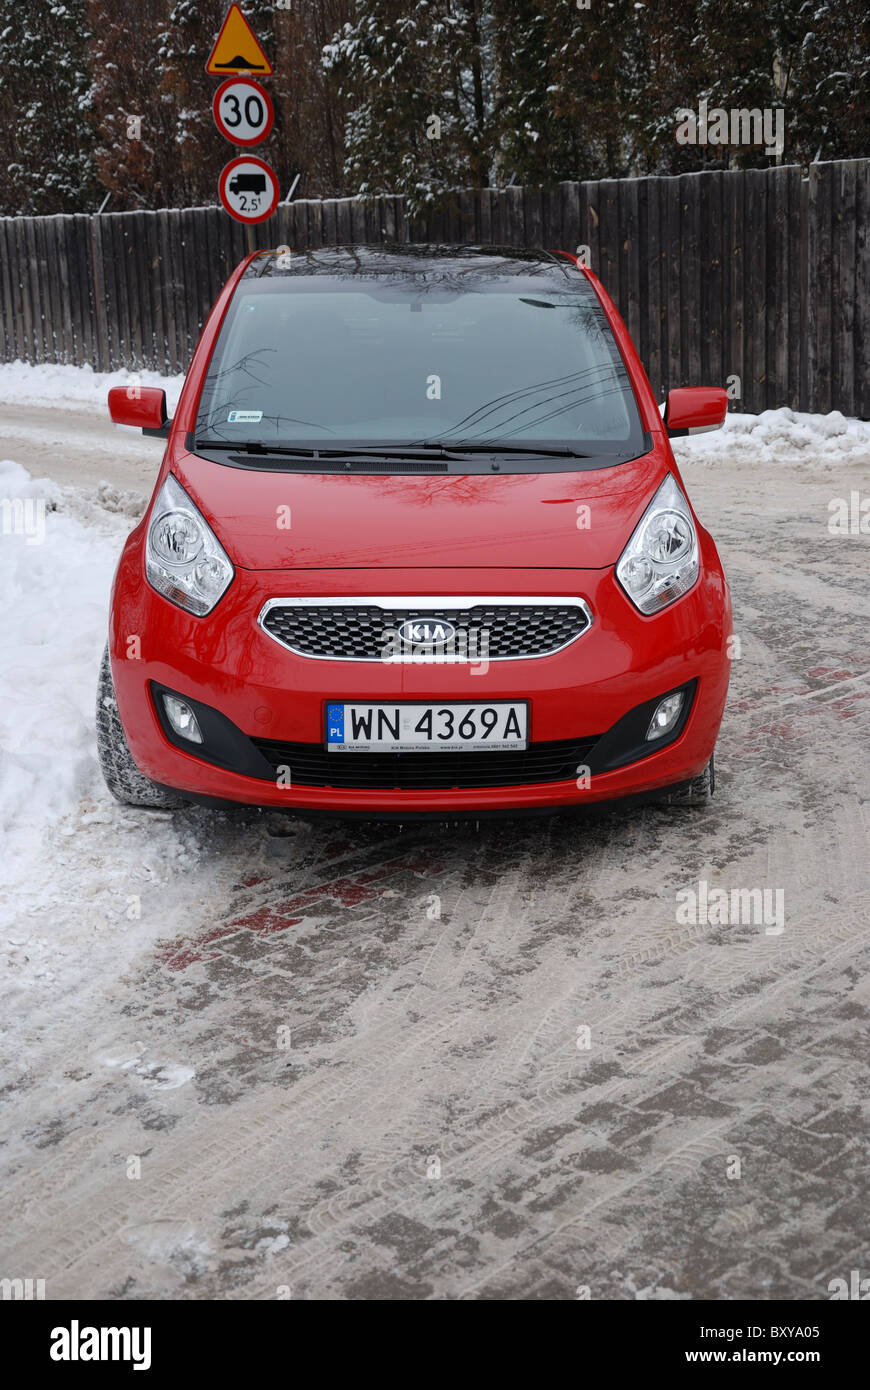 Kia Venga 1.4 XL - meine 2010 - roten - fünf Türen (5D) - kleine beliebte günstige Stadtauto - City, winter Stockfoto